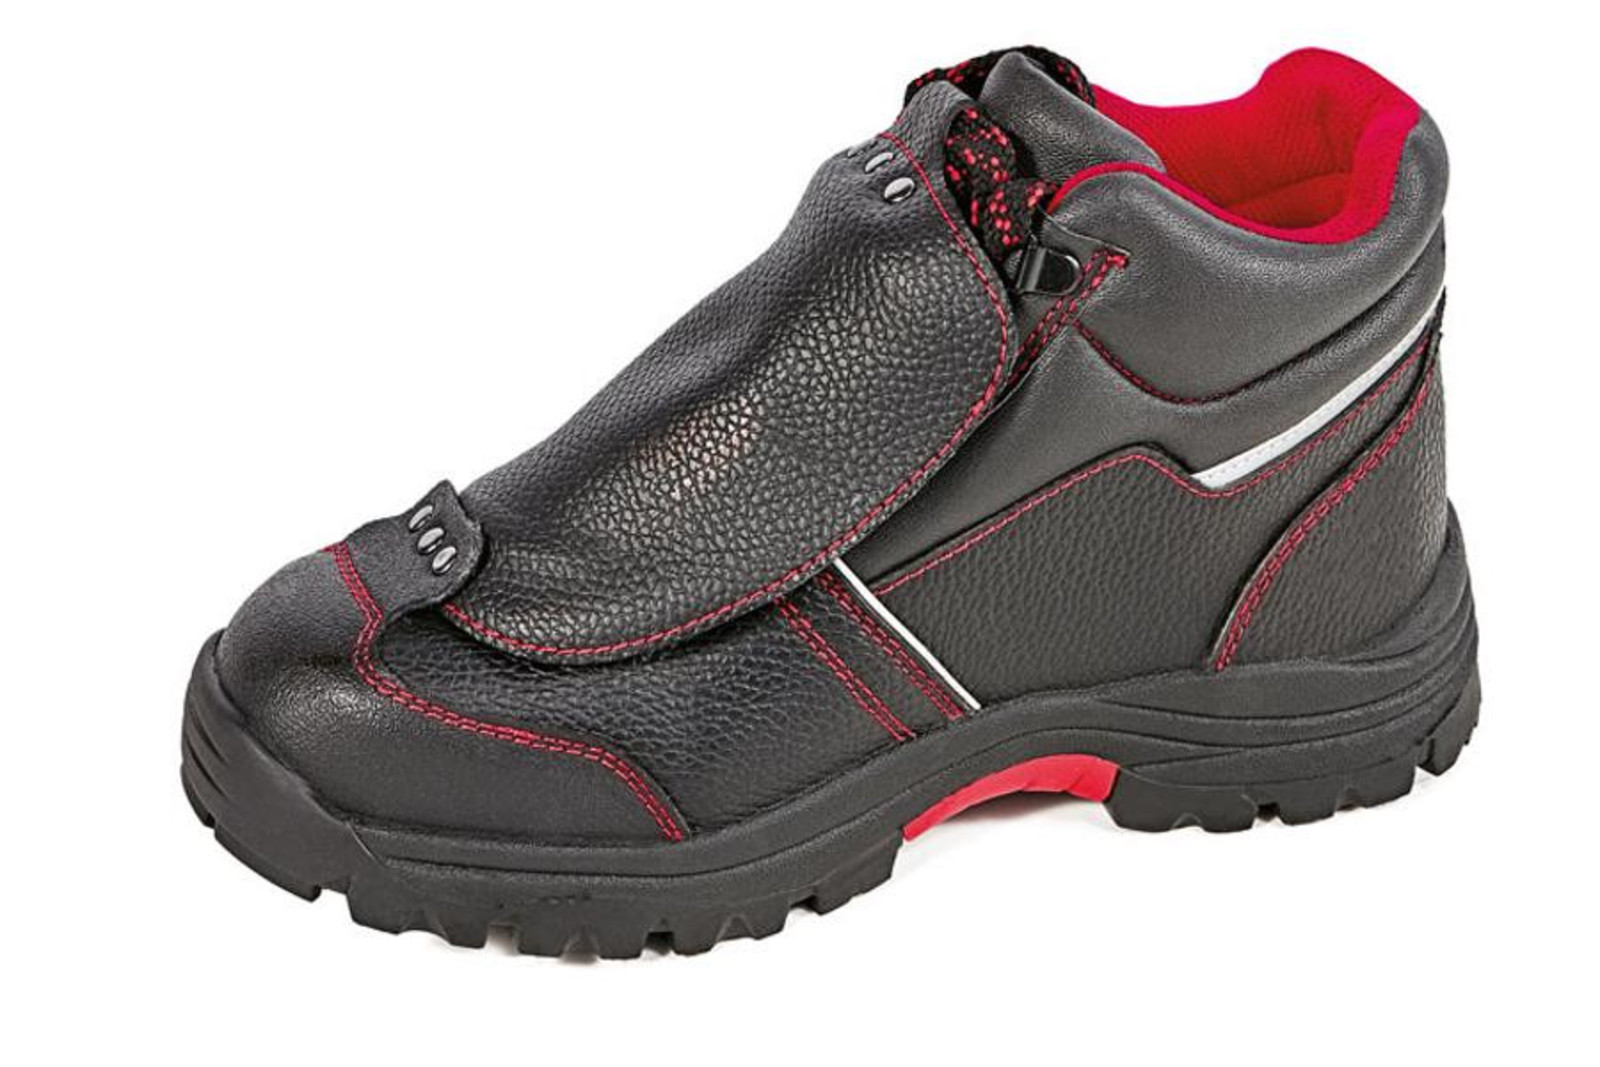 Bezpečnostná členková obuv Cerva Steeler Metatarsal S3 HRO M SRA  - veľkosť: 40, farba: čierna